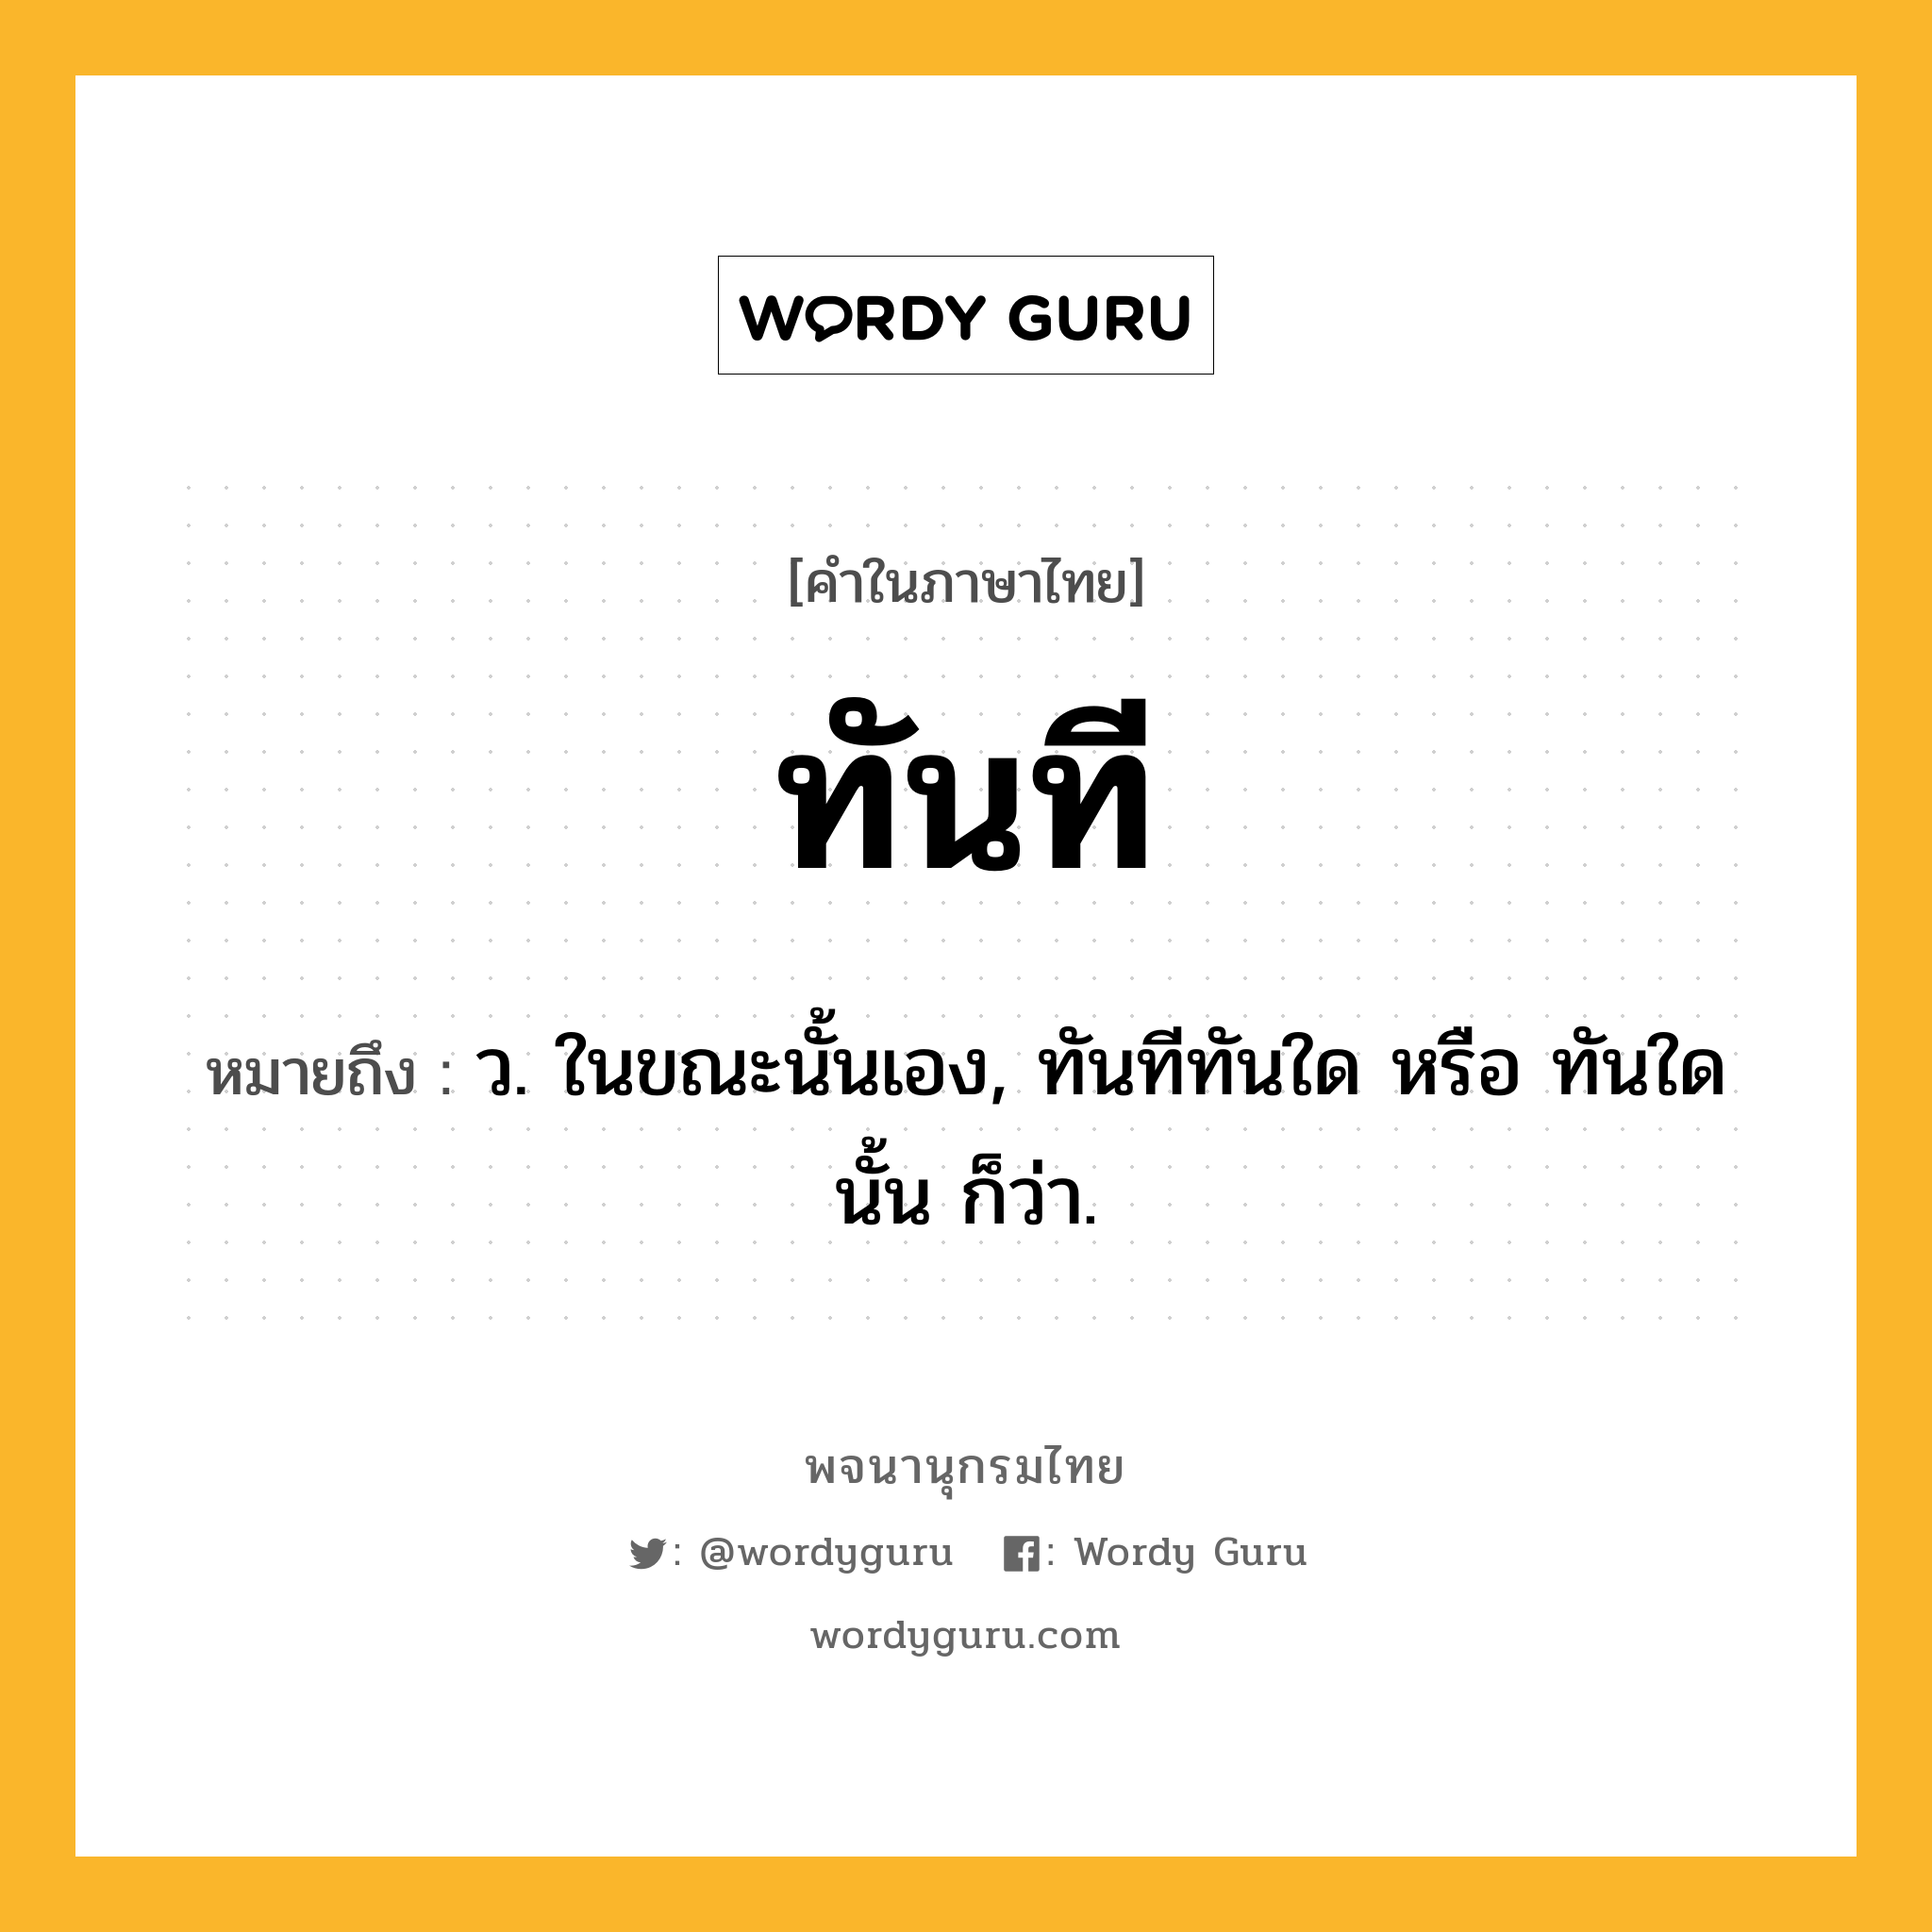 ทันที ความหมาย หมายถึงอะไร?, คำในภาษาไทย ทันที หมายถึง ว. ในขณะนั้นเอง, ทันทีทันใด หรือ ทันใดนั้น ก็ว่า.